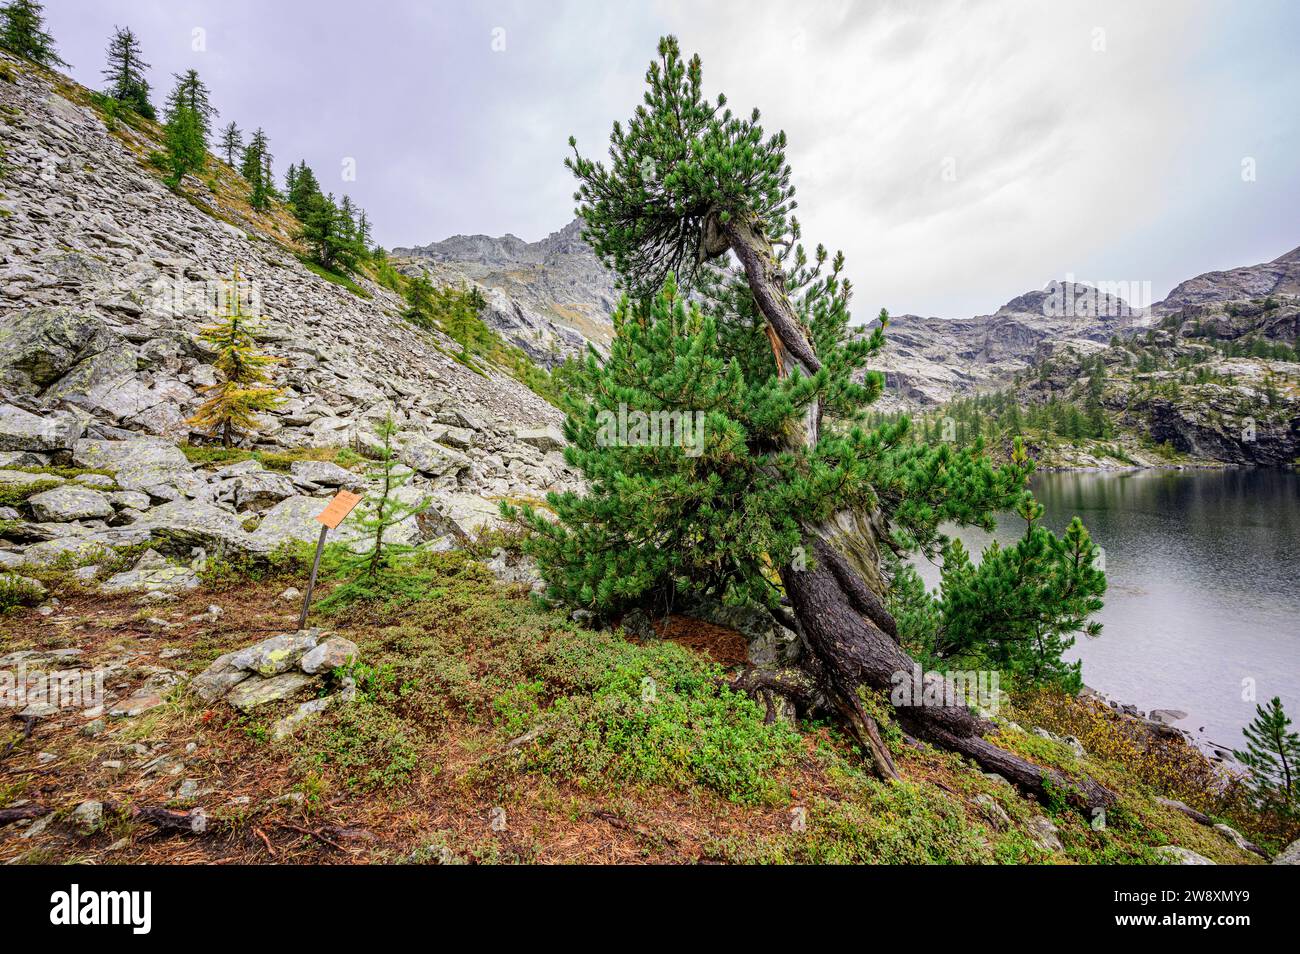 Un pin suisse monumental d'environ 300 ans dans le parc naturel du Mont Avic, Val d'Aoste, Italie. Banque D'Images